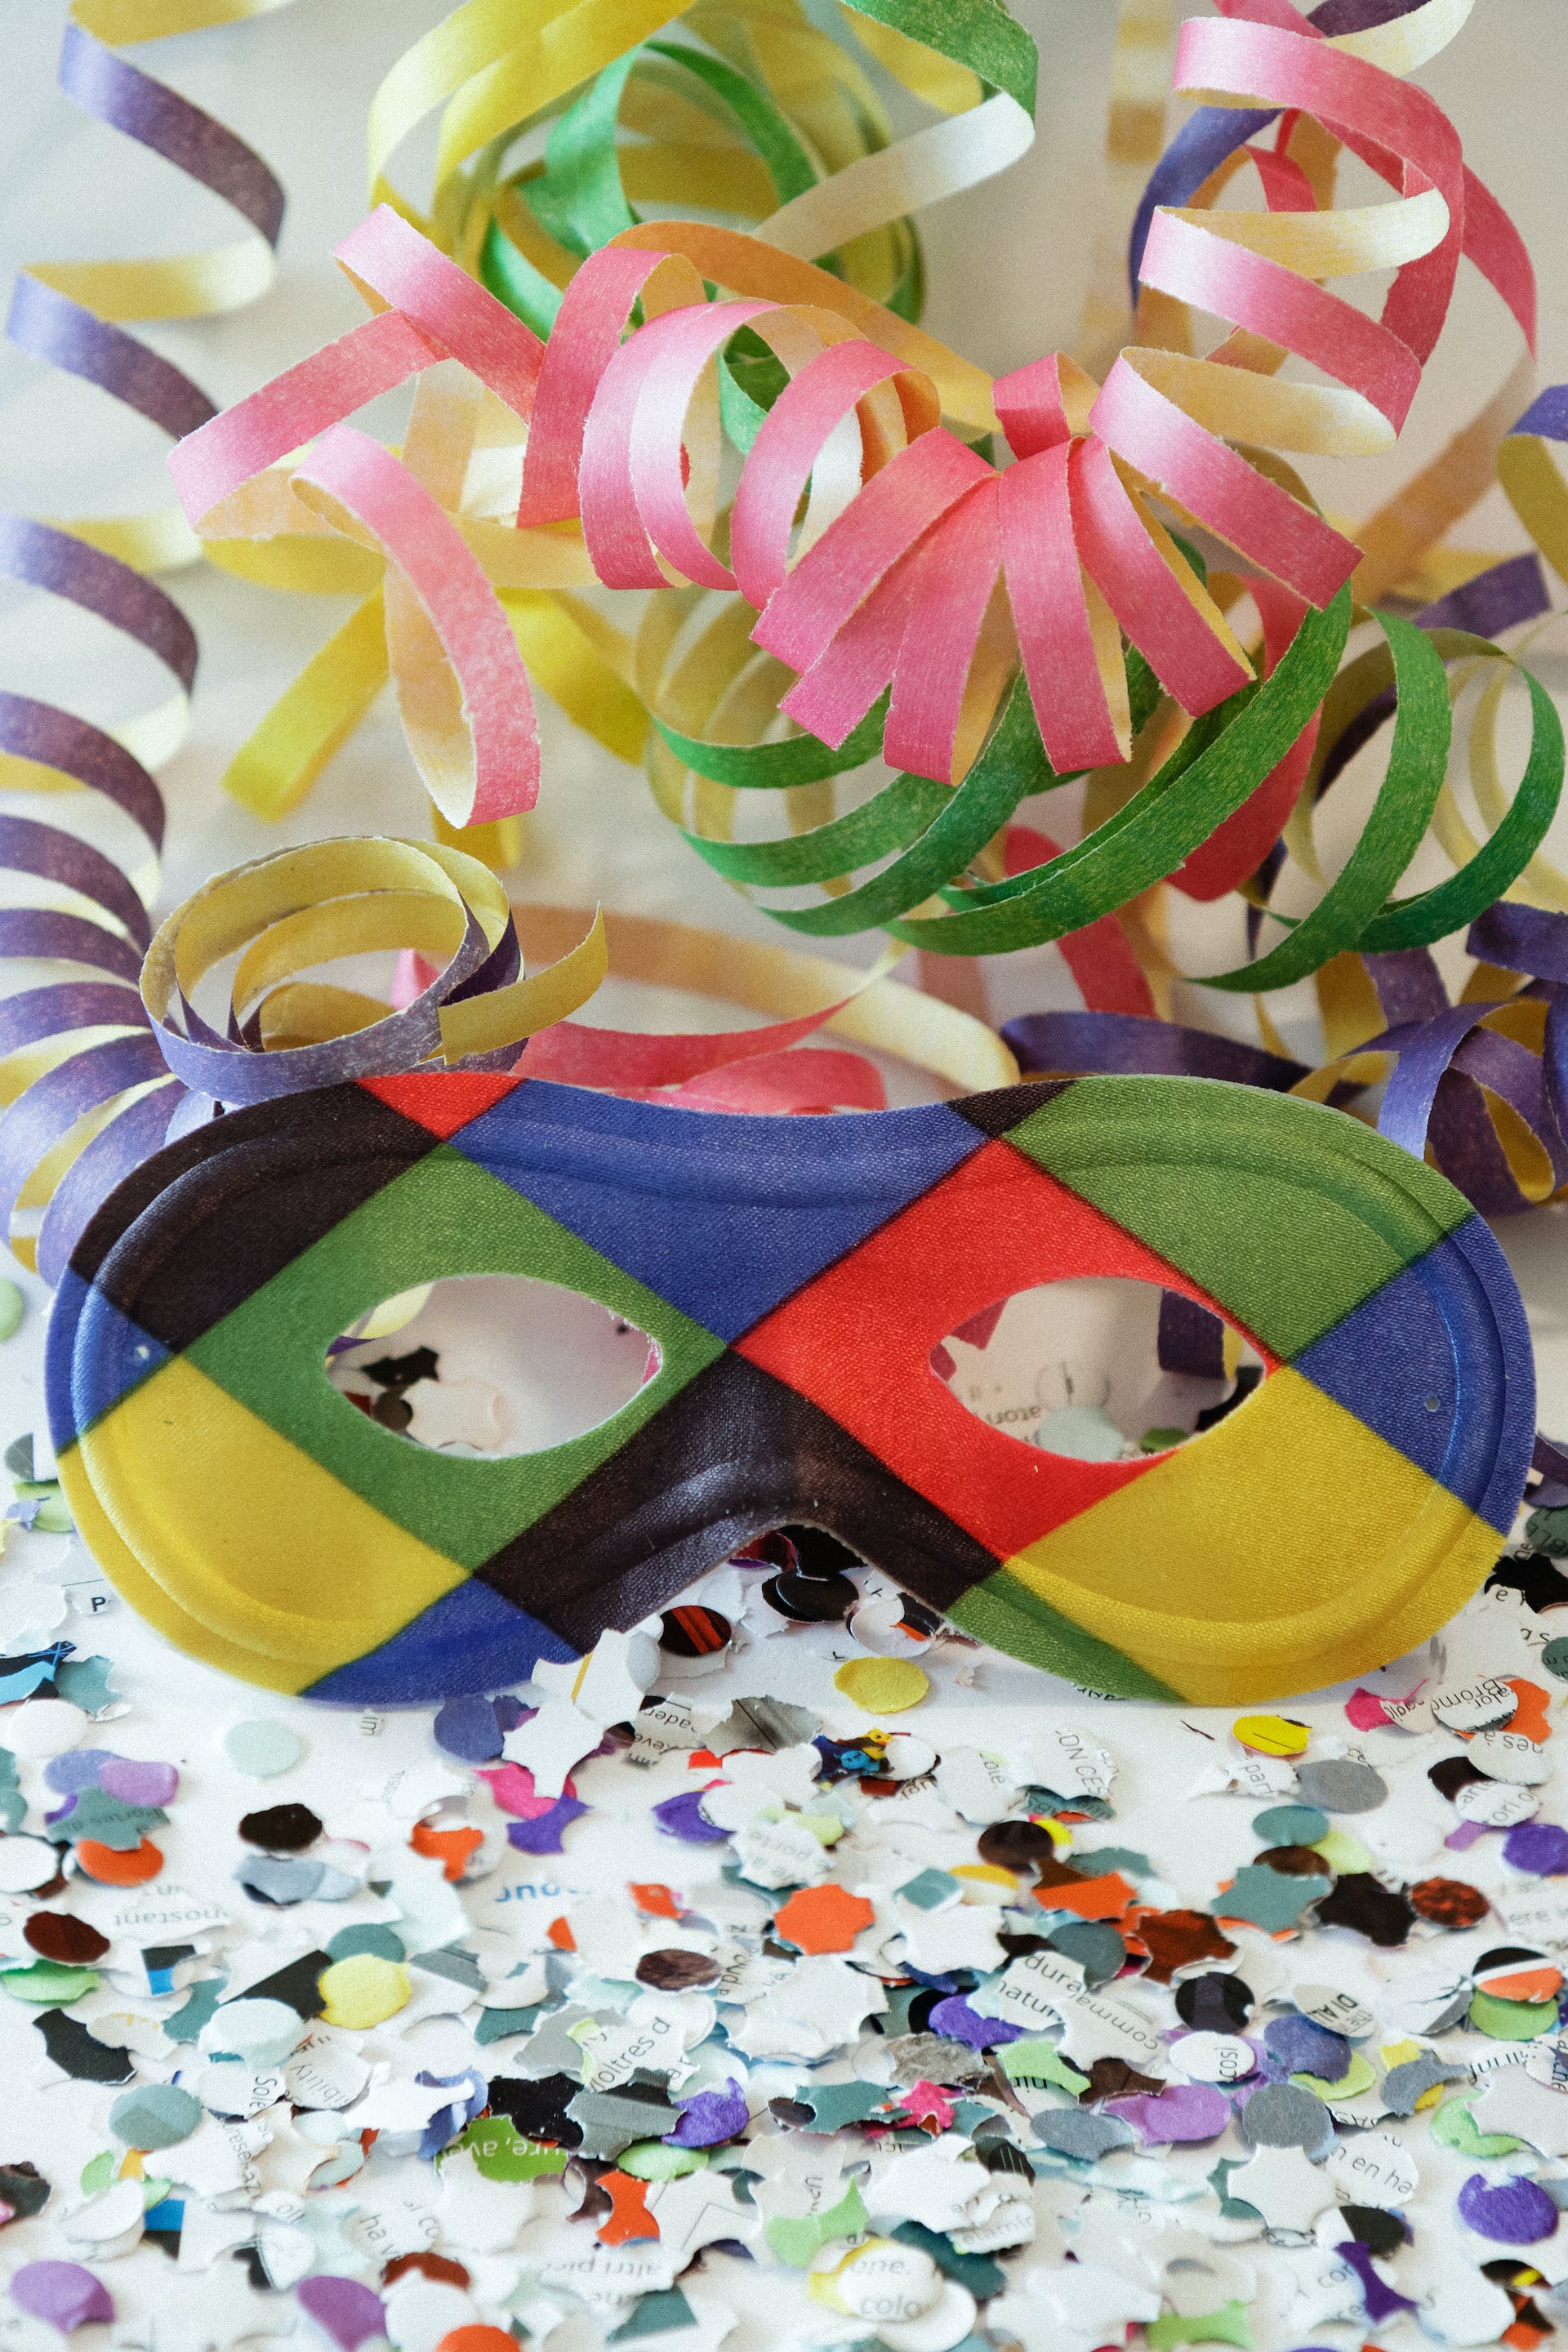 Cartoncini colorati e carta crespa: 5 lavoretti per bambini creativi